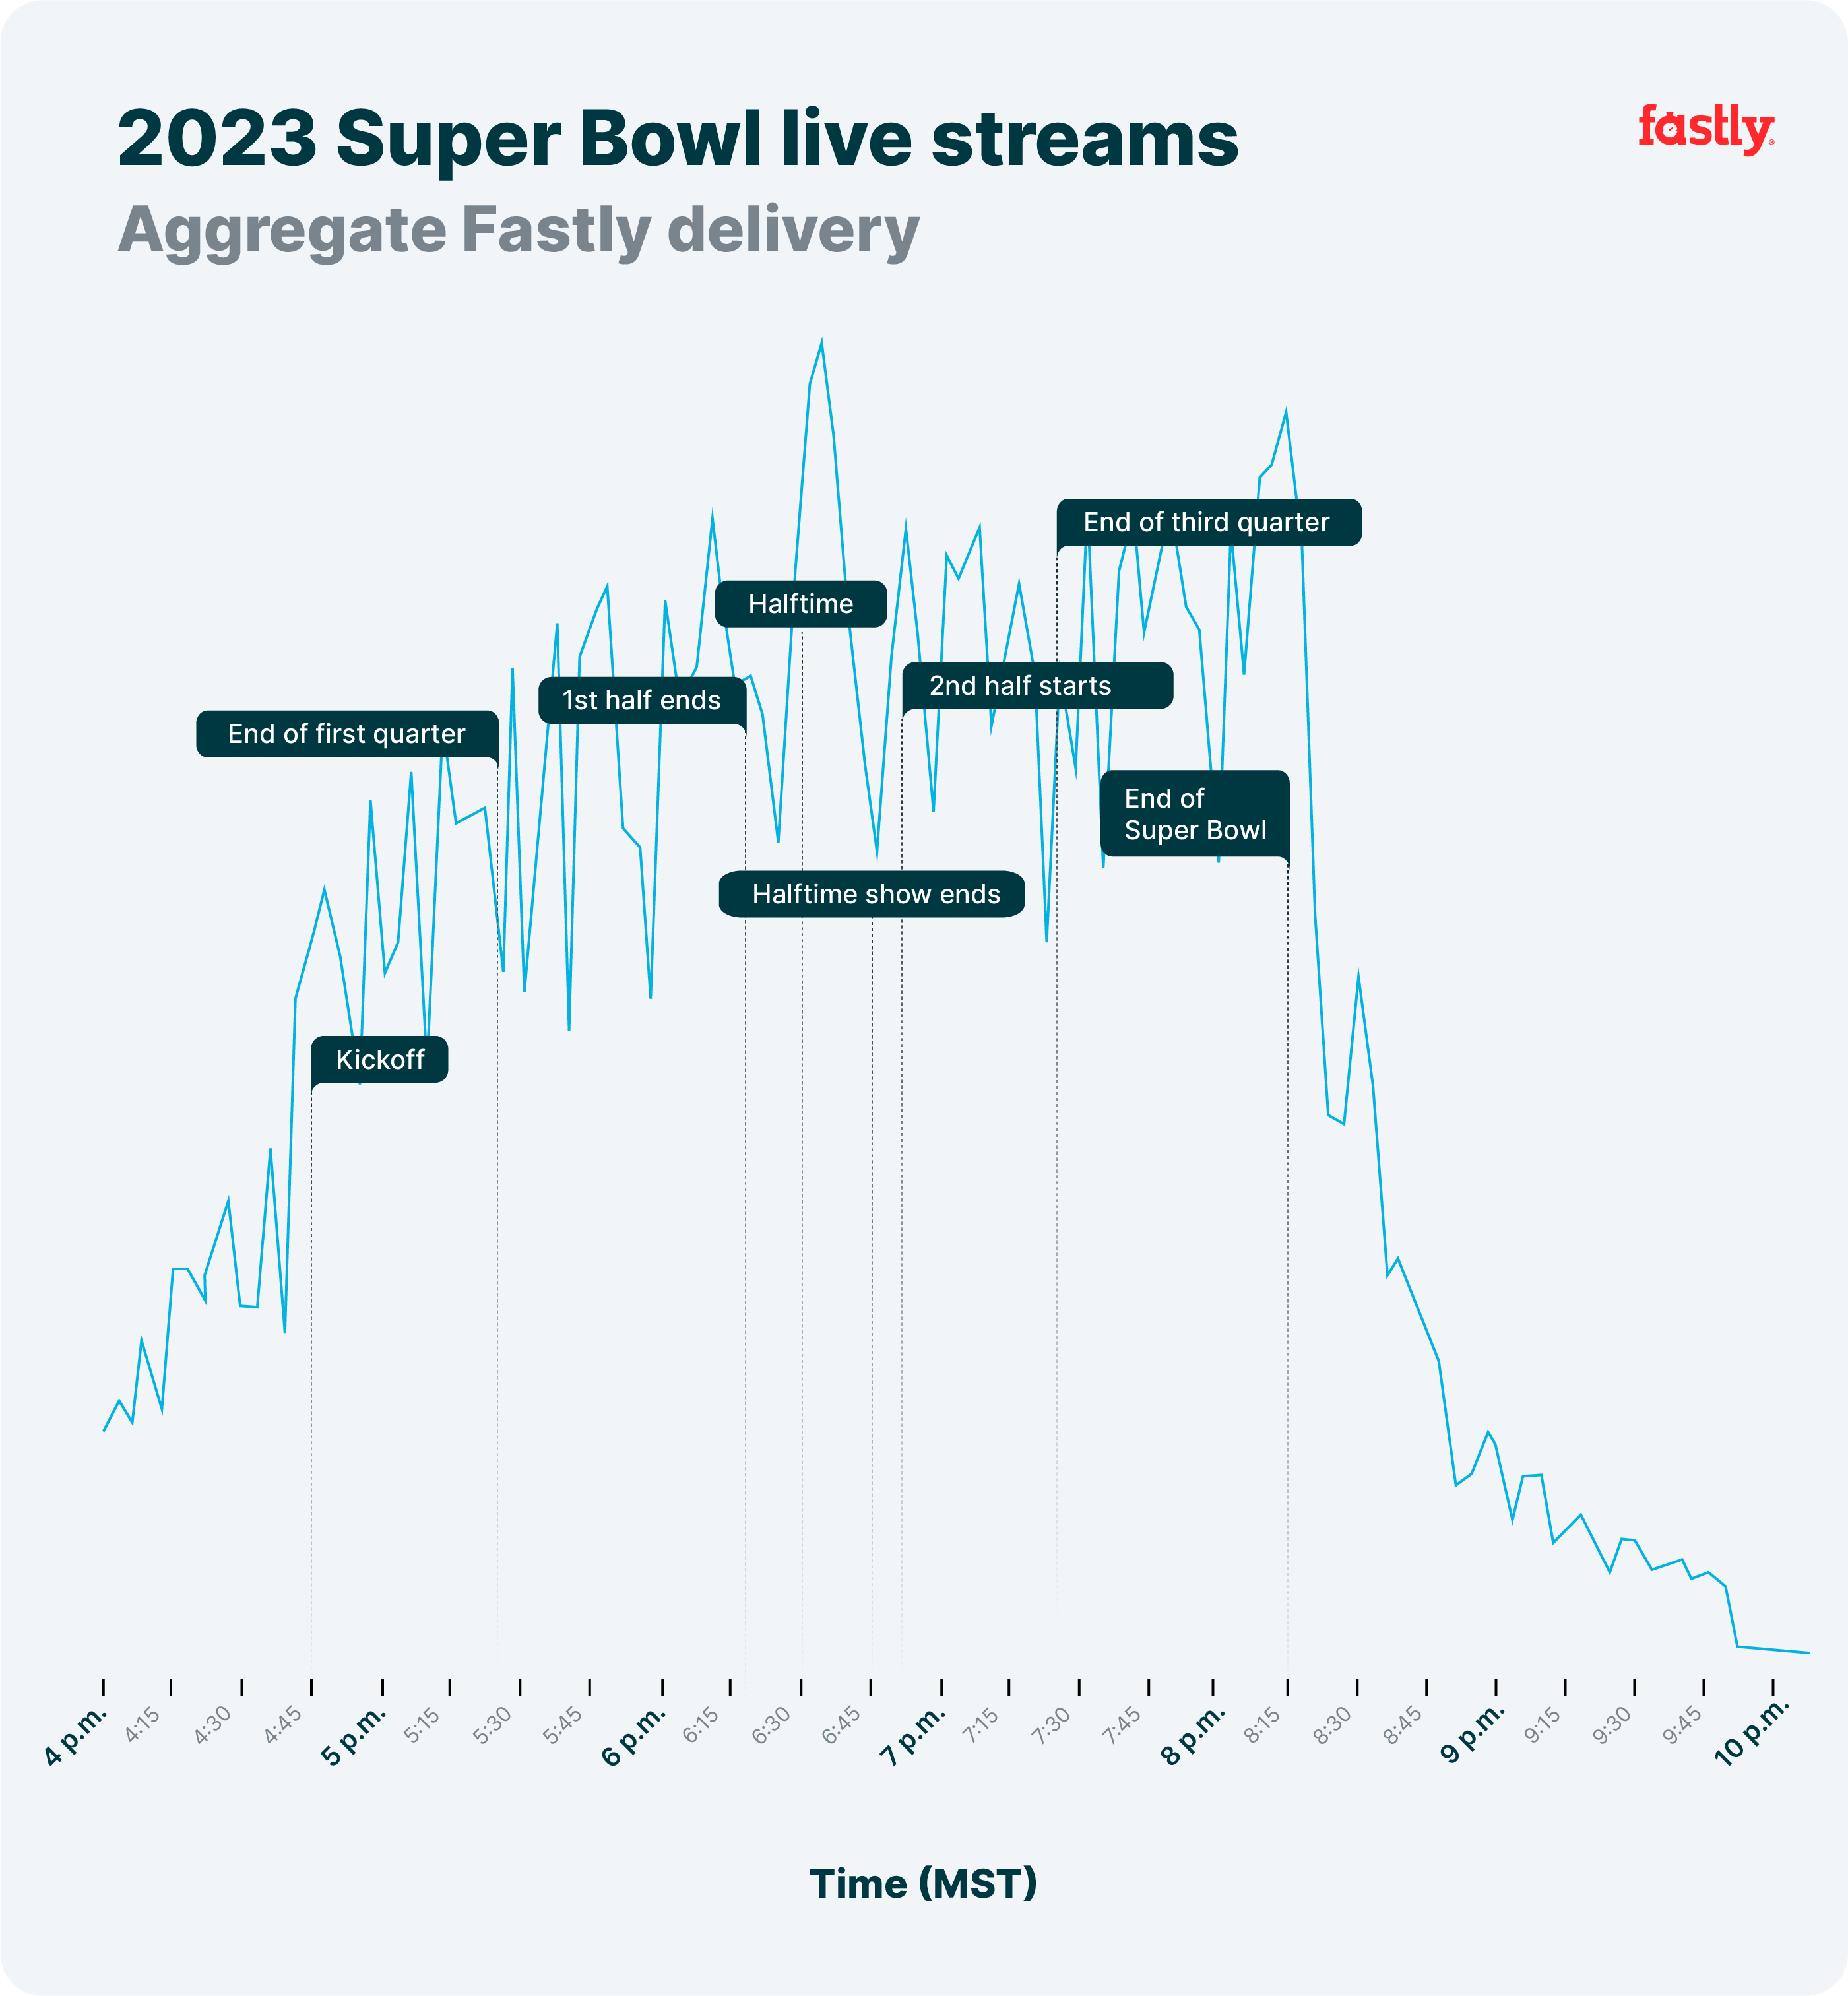 Neue Rekorde nach über einem Jahrzehnt der Auslieferung des Super Bowls Fastly